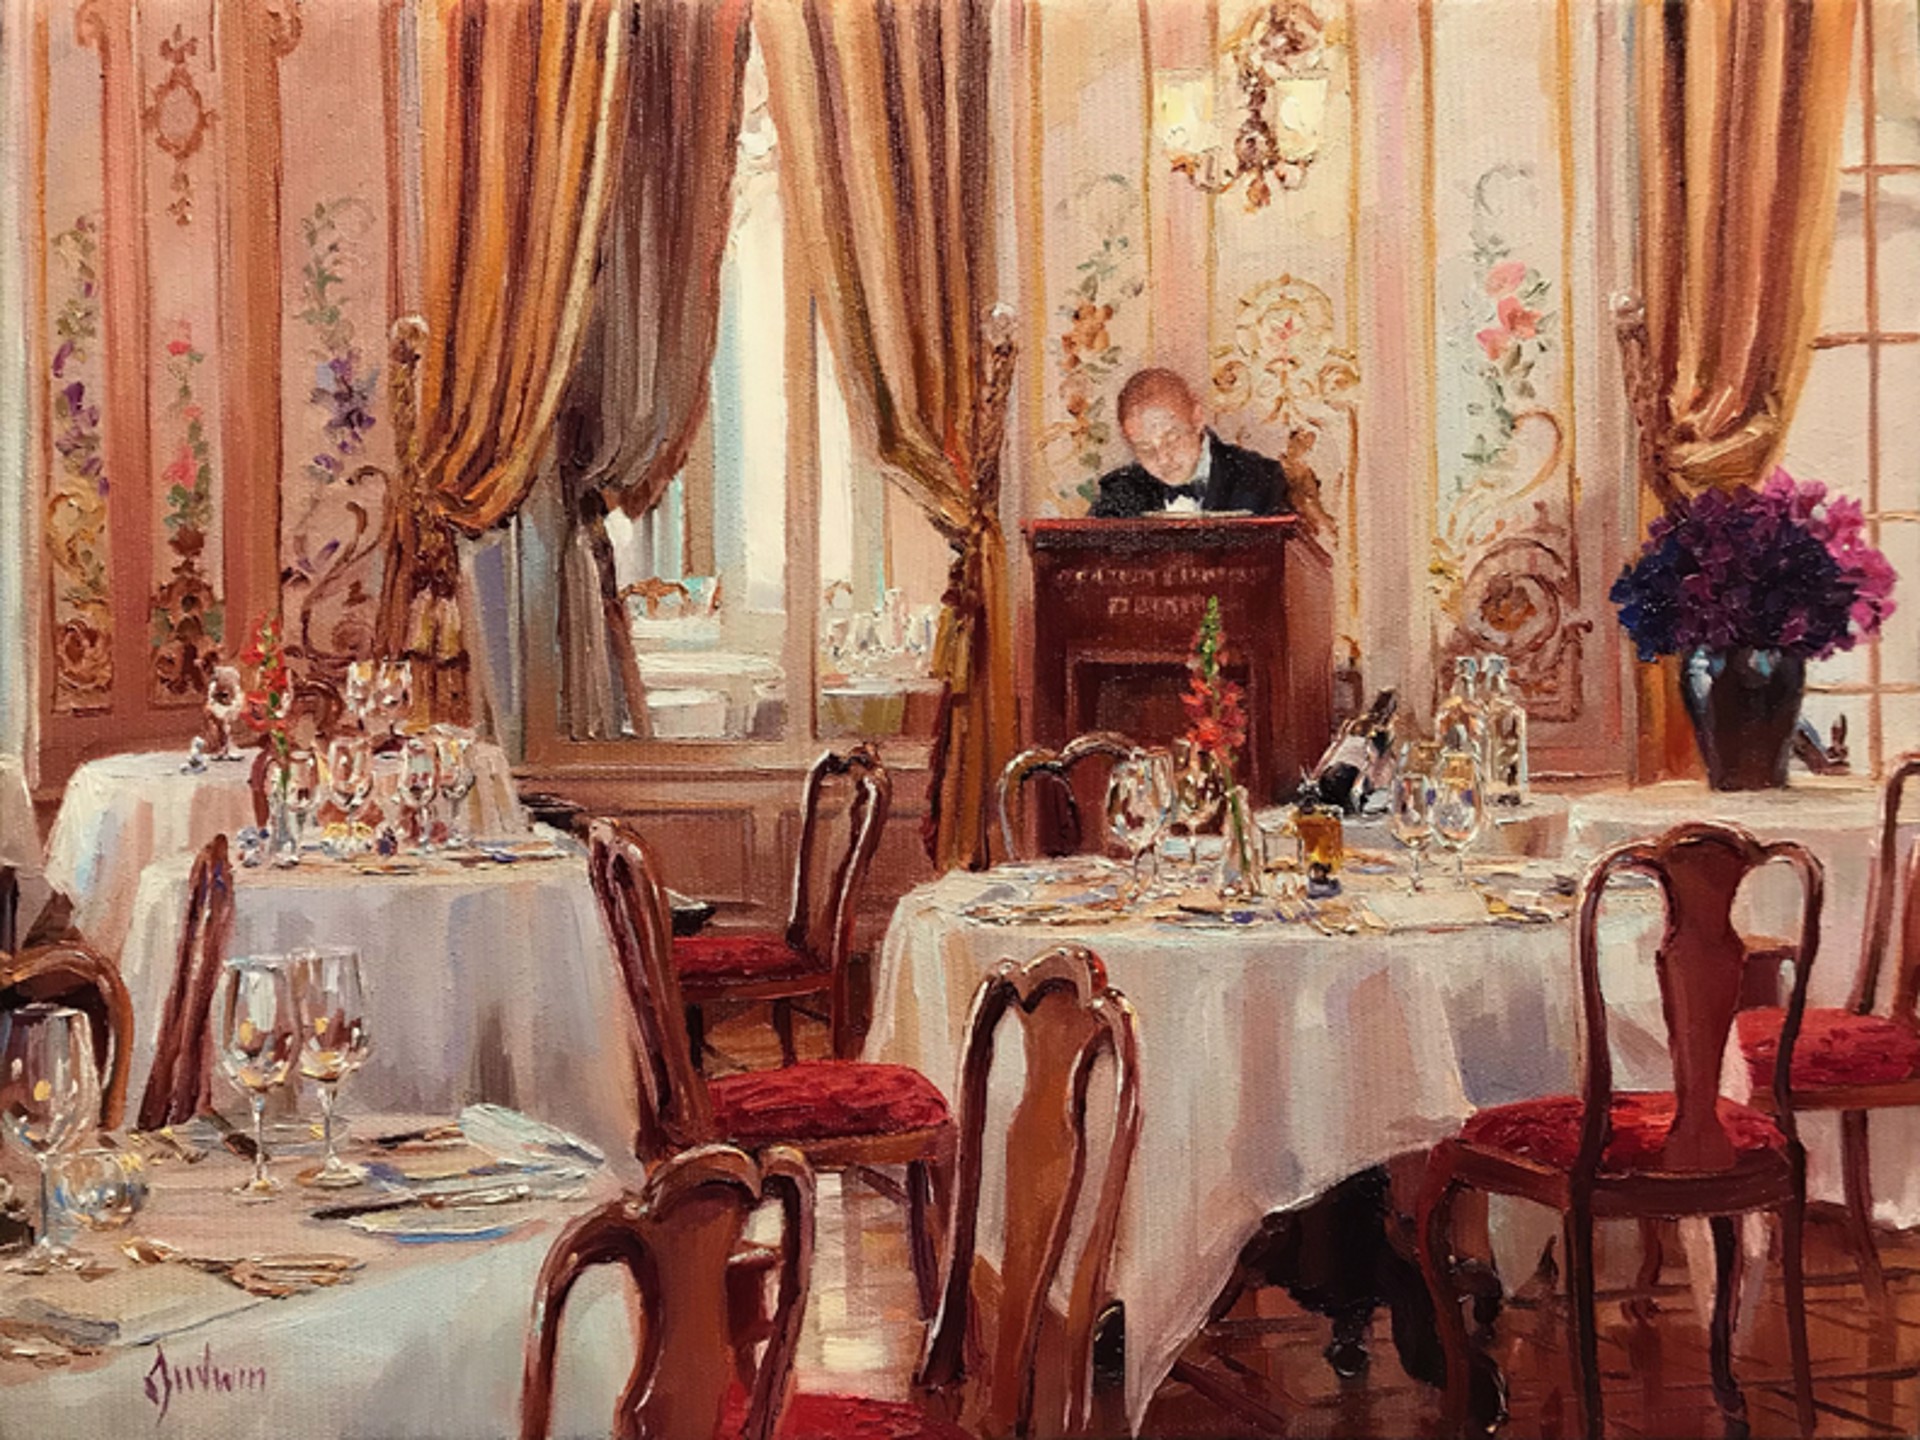 Le Maitre'd, Le Grand Hotel Kronenhof by Lindsay Goodwin